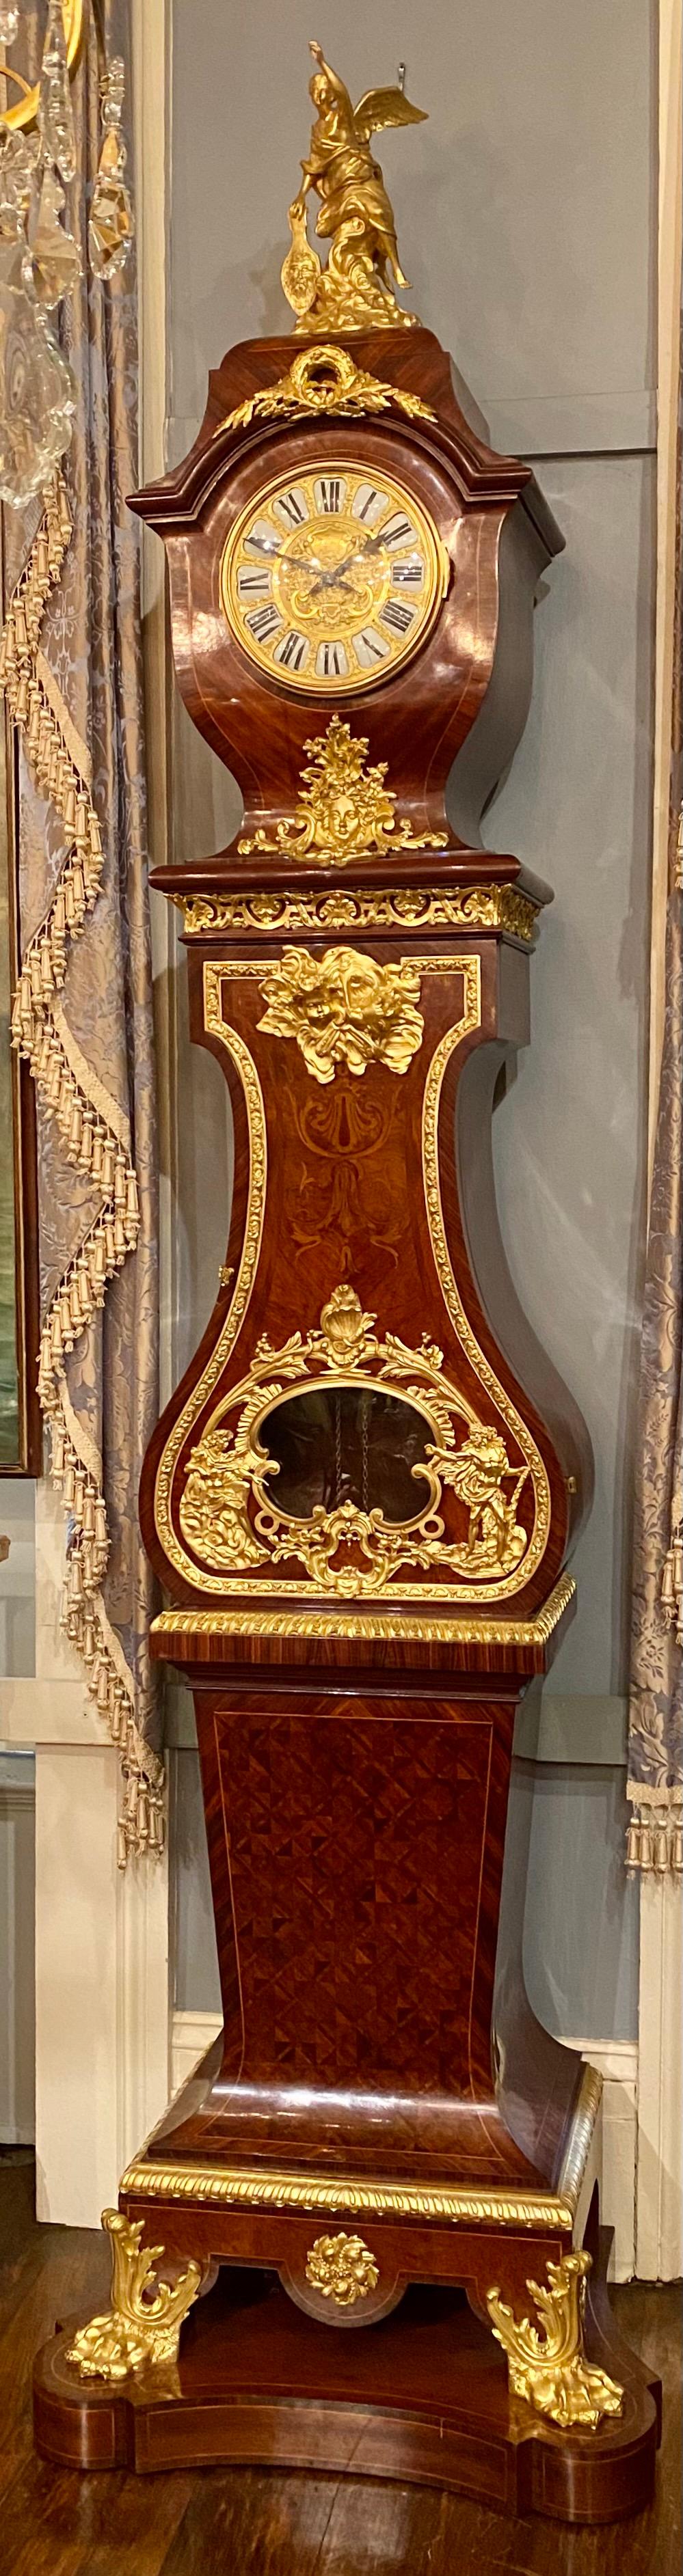 Ancienne pendule de grand-père française Napoléon III en acajou monté en bronze doré Circa 1885-1890. Il s'agit d'une belle horloge, avec de magnifiques incrustations en bois exotique et des finitions en bronze doré. Elle est de style Napoléon III.